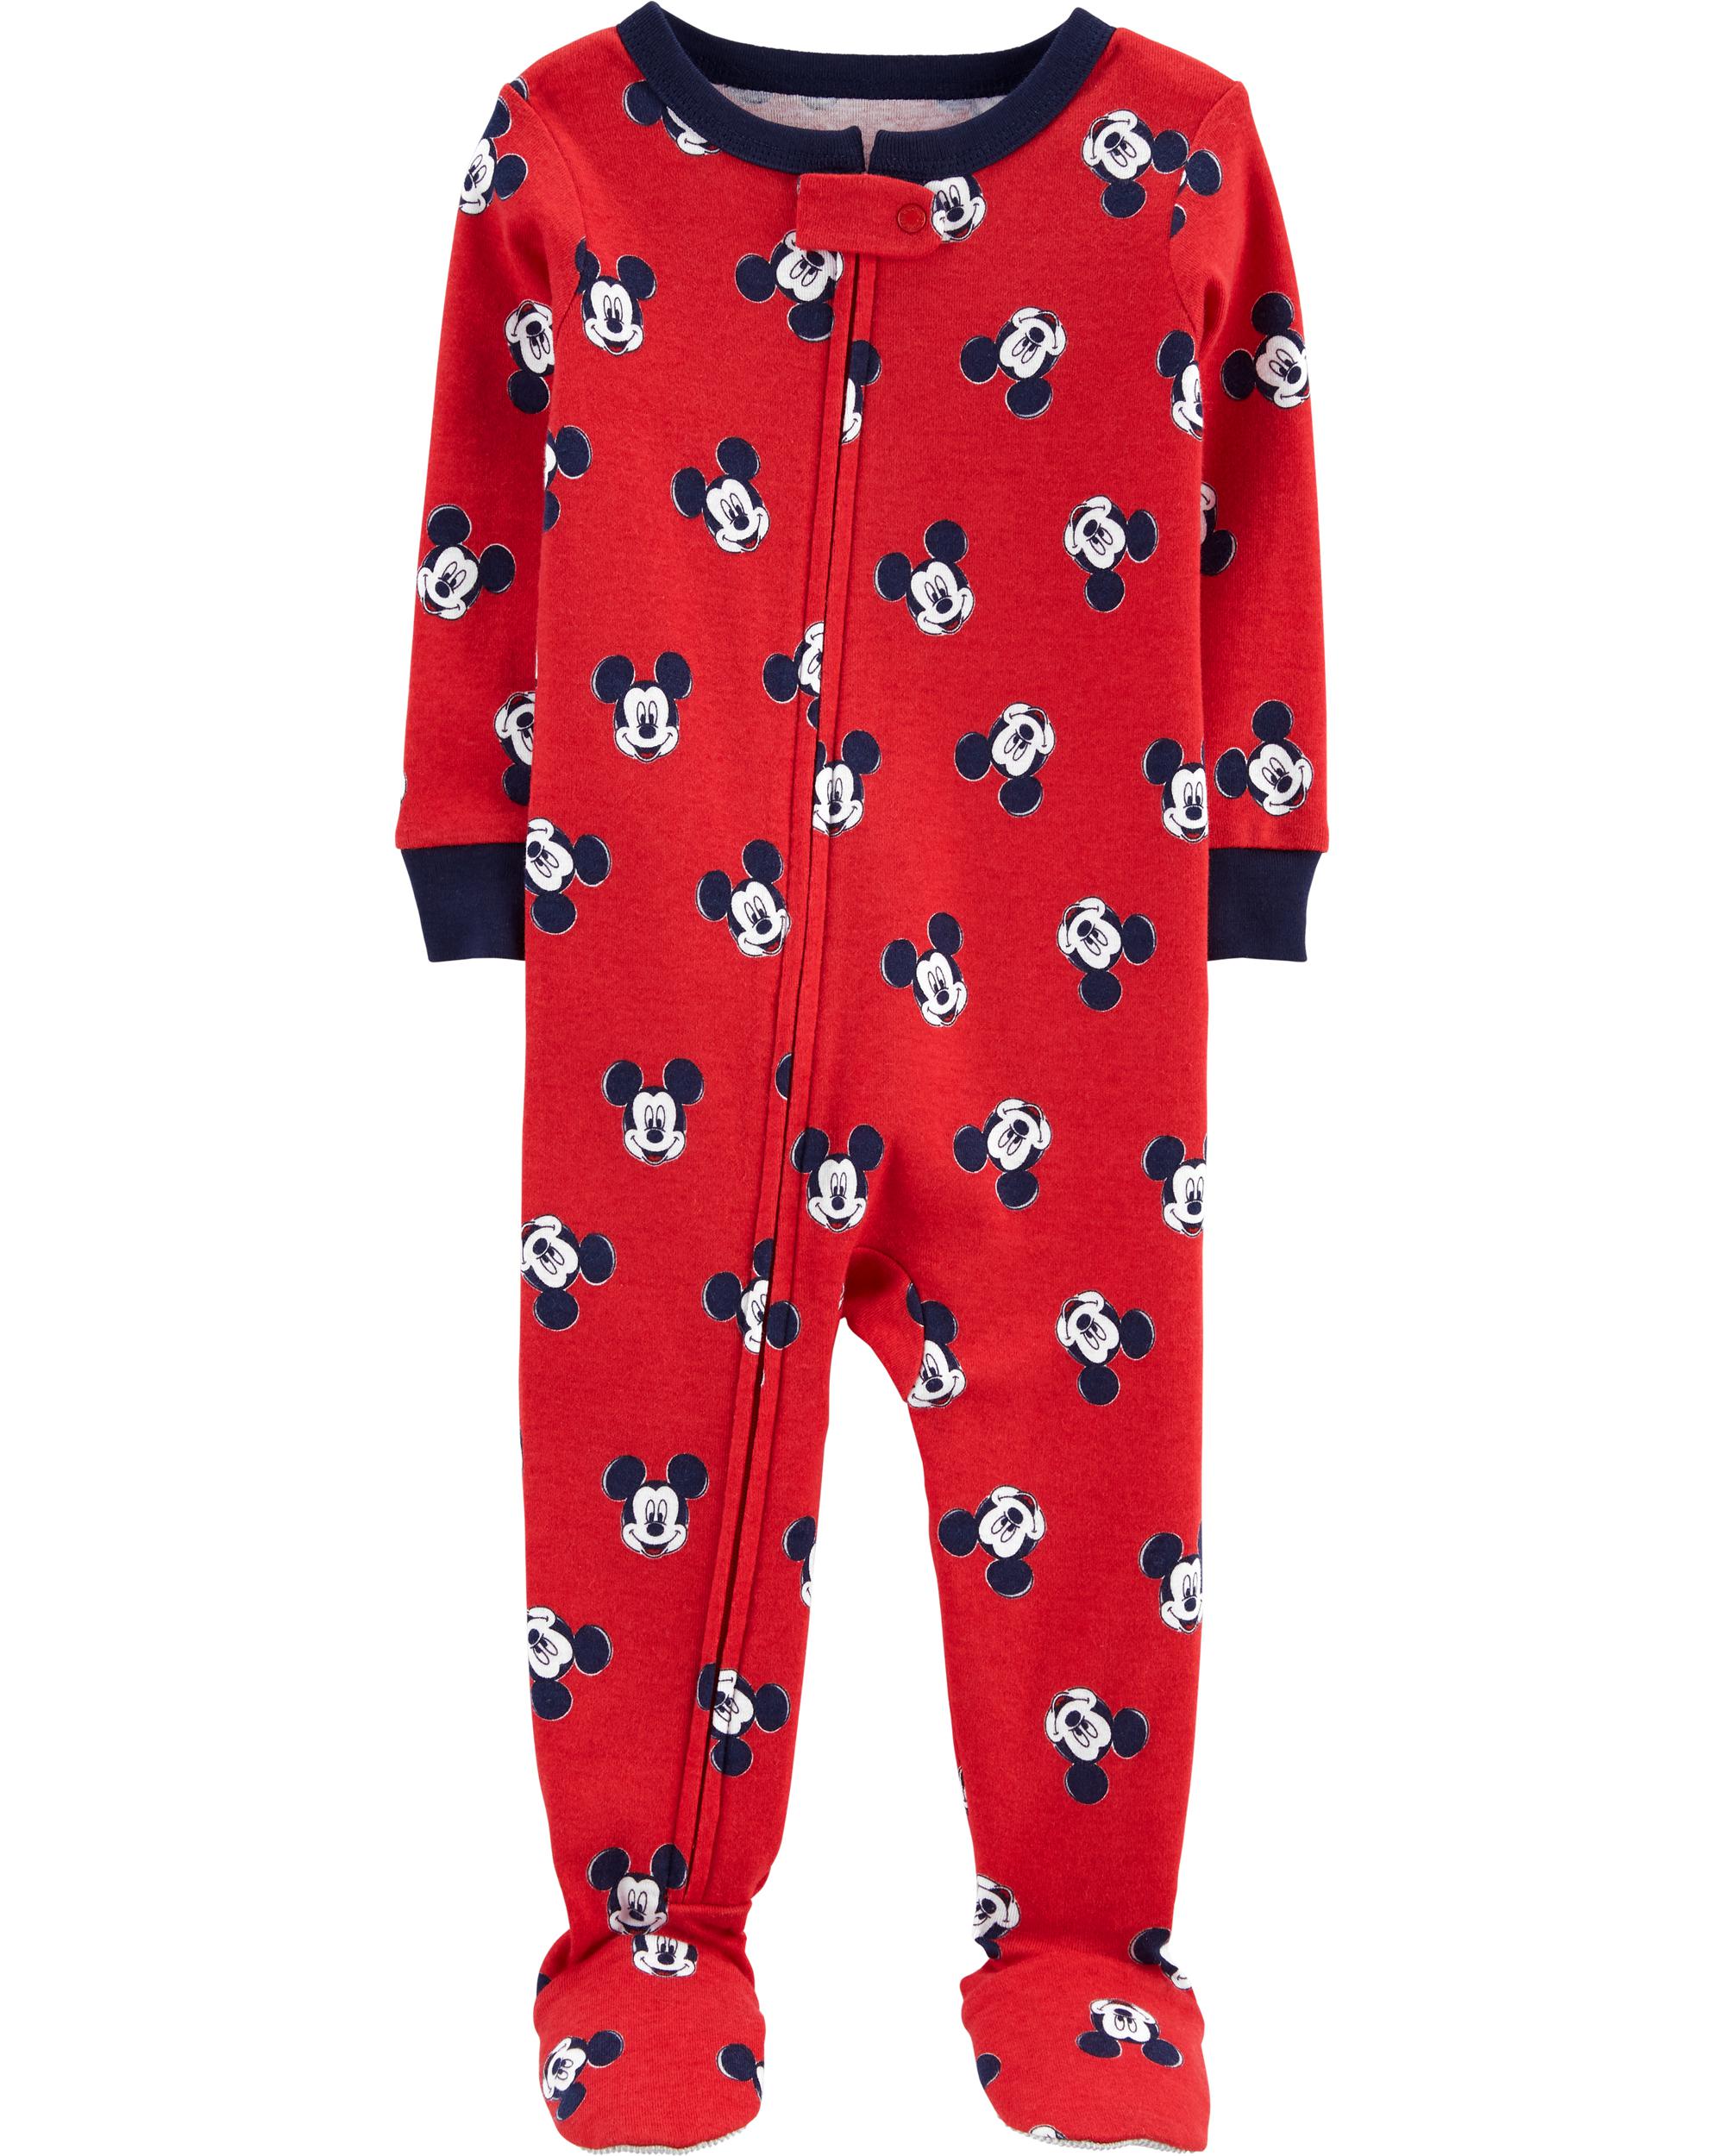 Baby 1-Piece 100% Snug Fit Cotton Footie Pyjamas